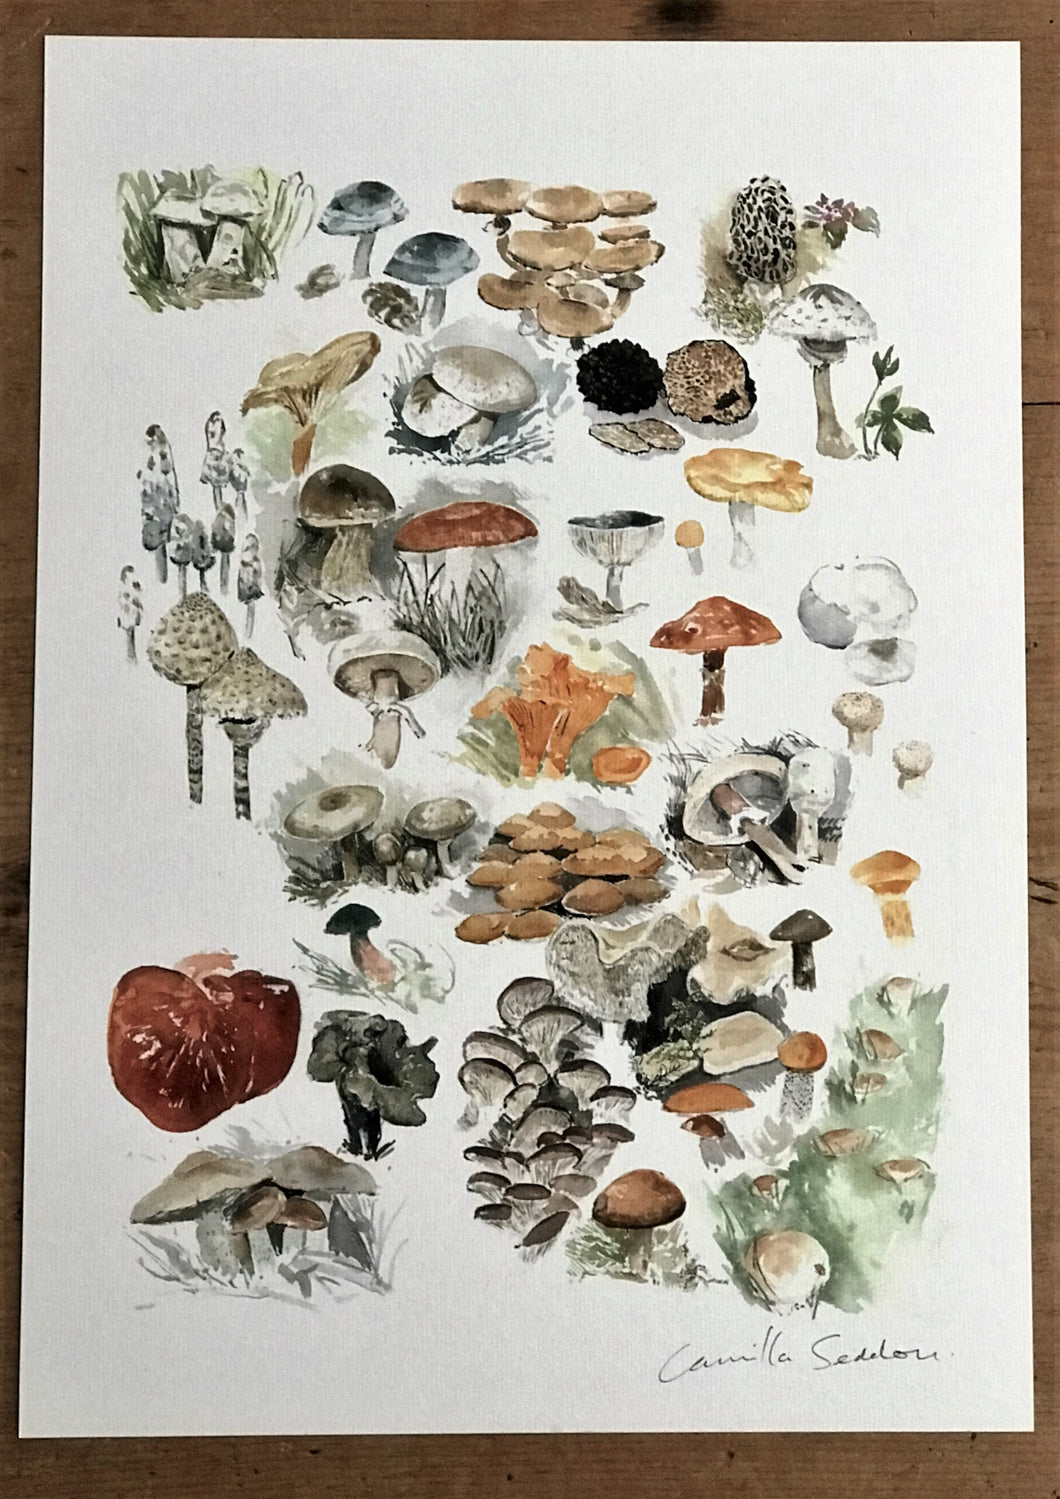 Edible Mushrooms Art Print